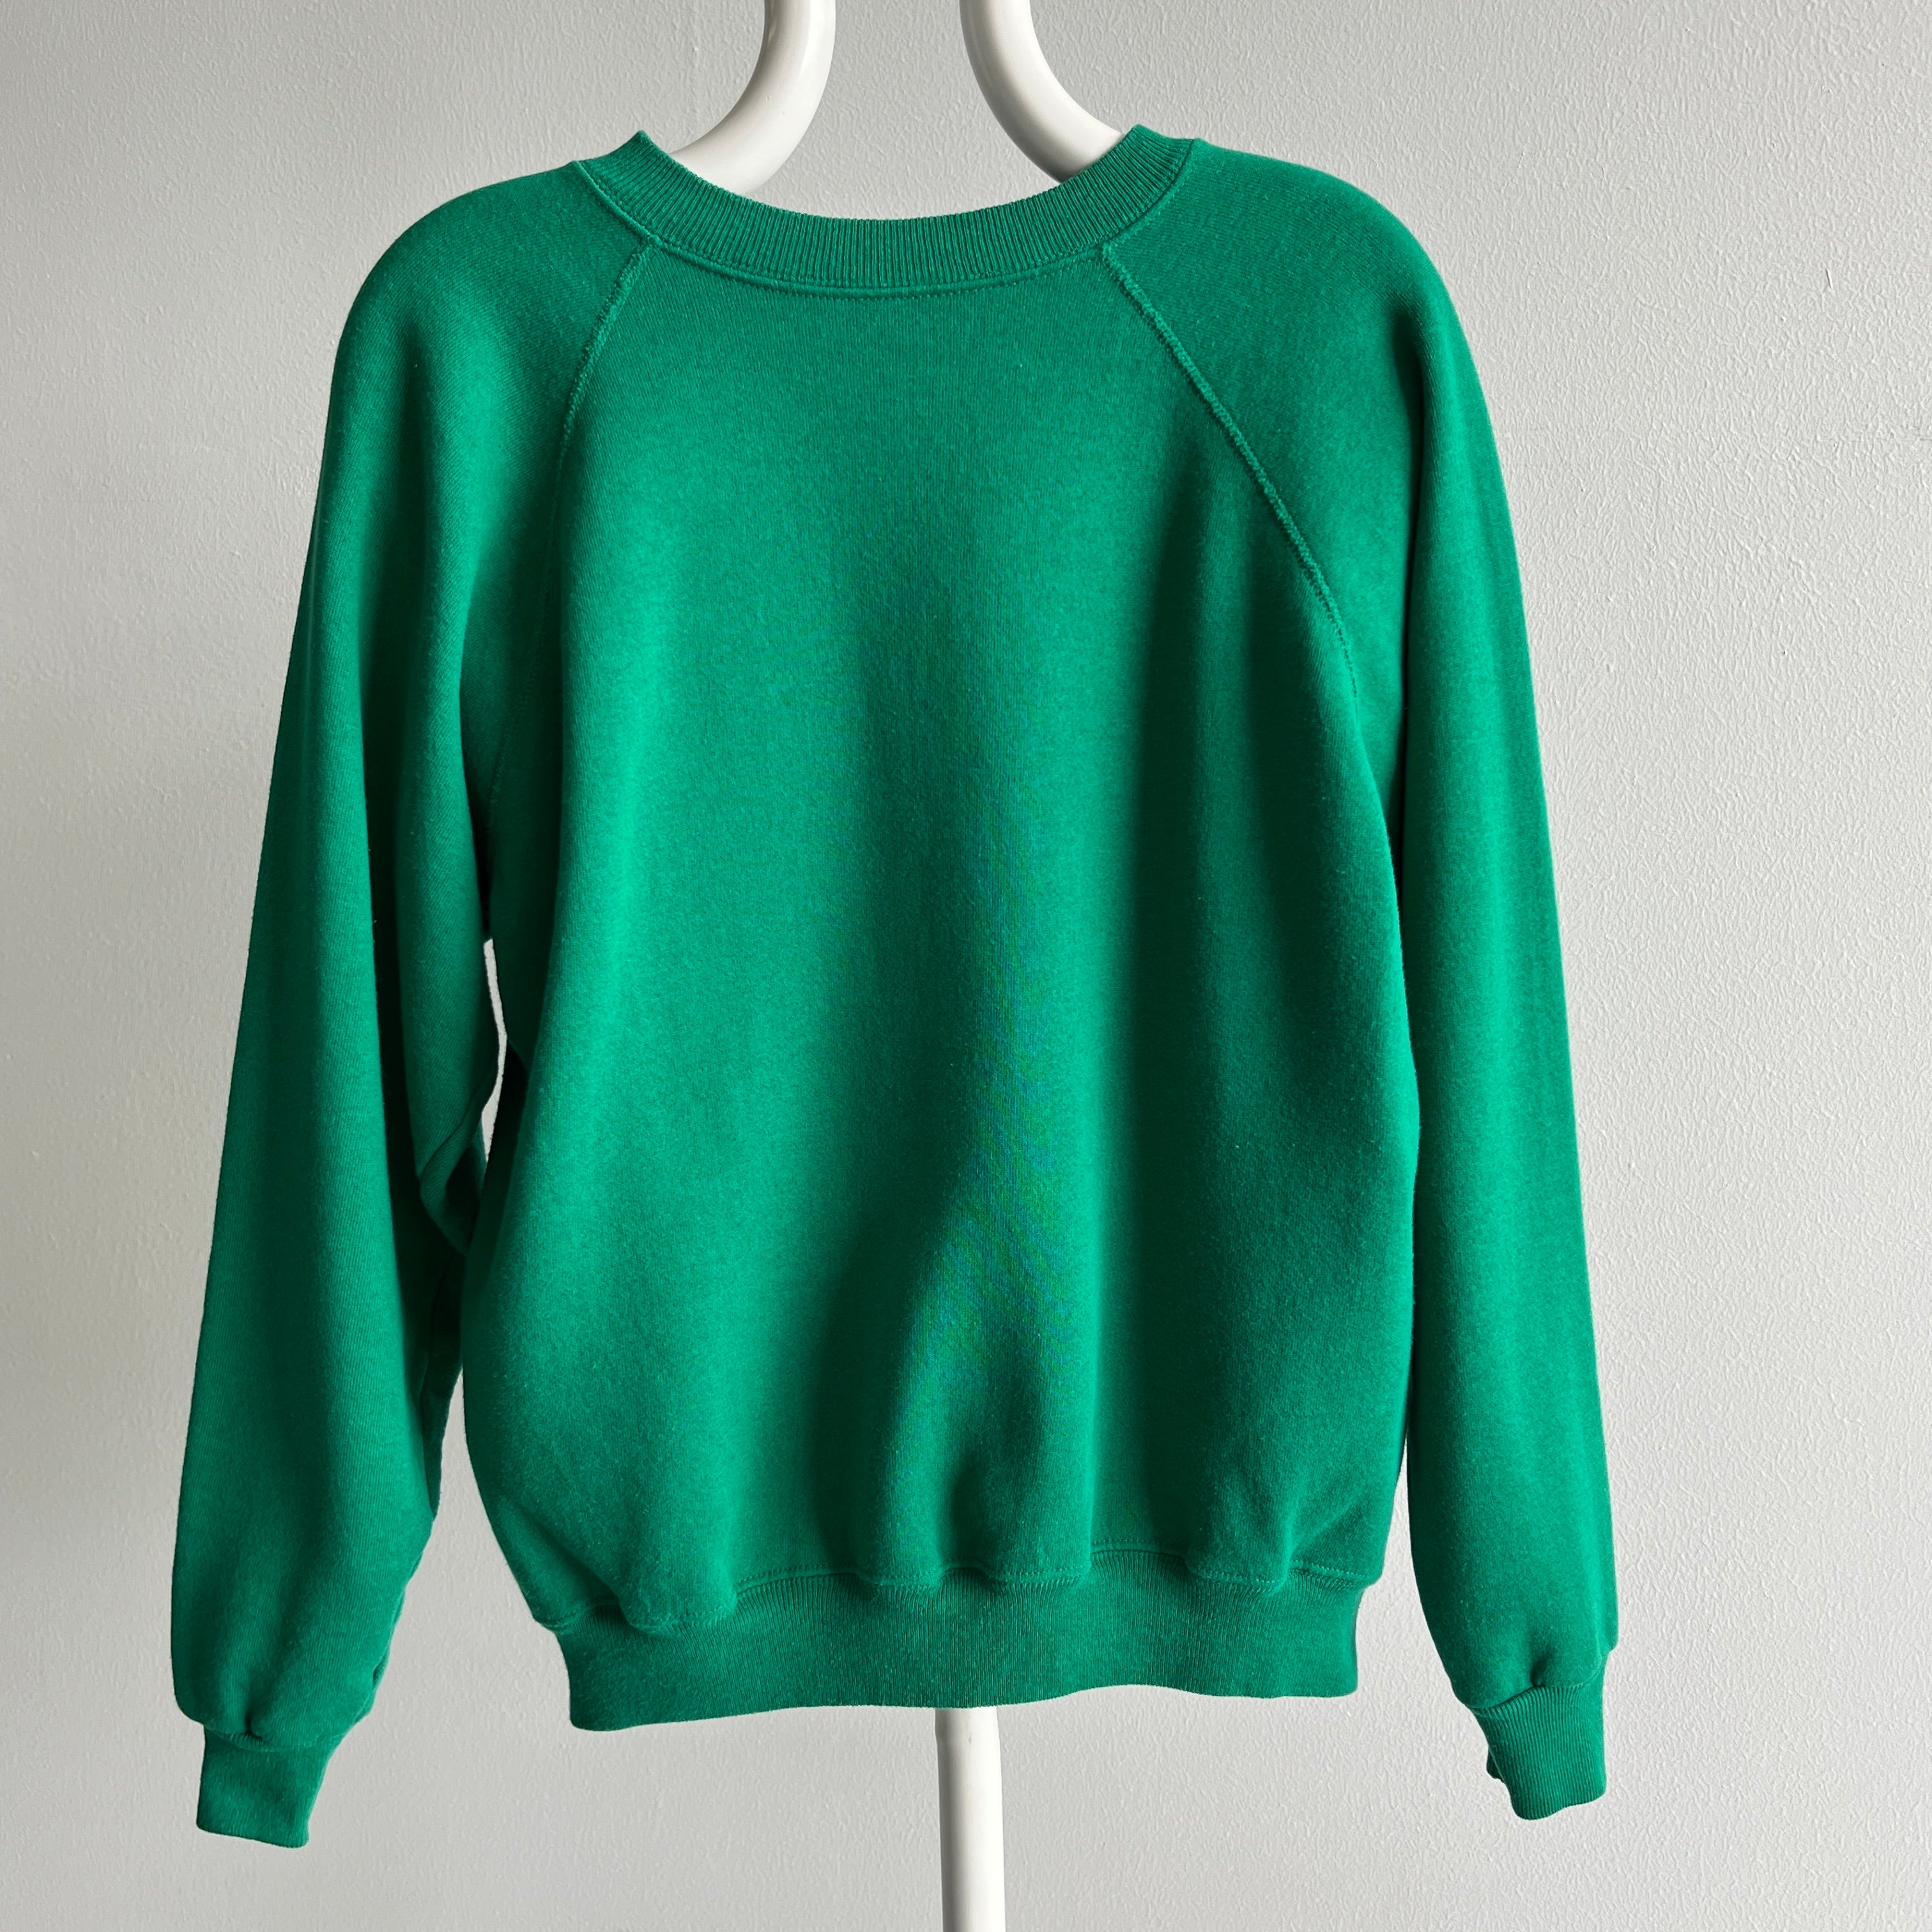 1980s Grass is Green Raglan Sweatshirt - A Gem!